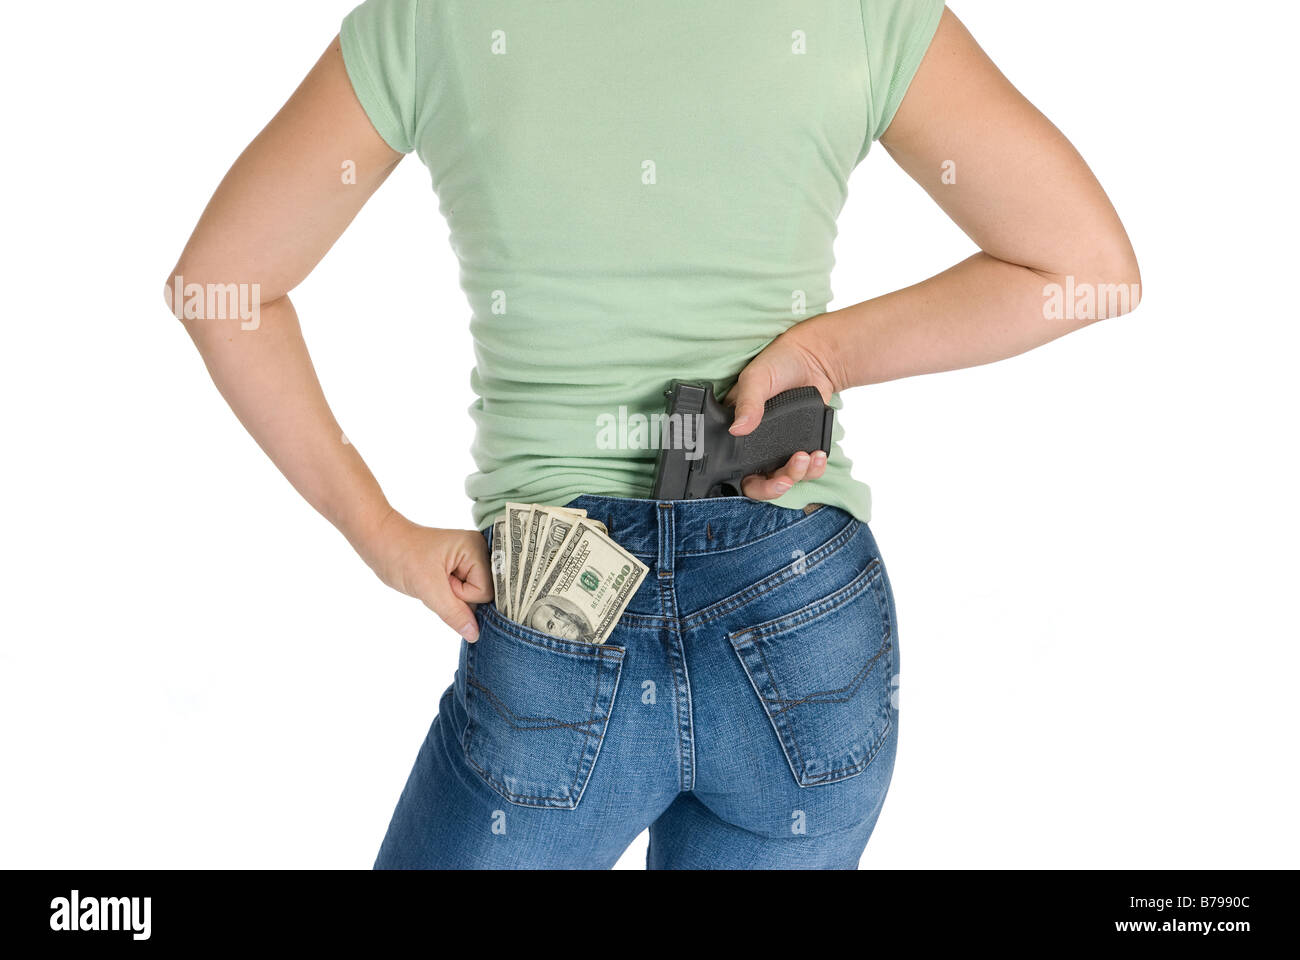 Eine Frau mit ihrem Geld und die Waffe zusammen mit einer Haltung bereitet sich für den Schutz Stockfoto